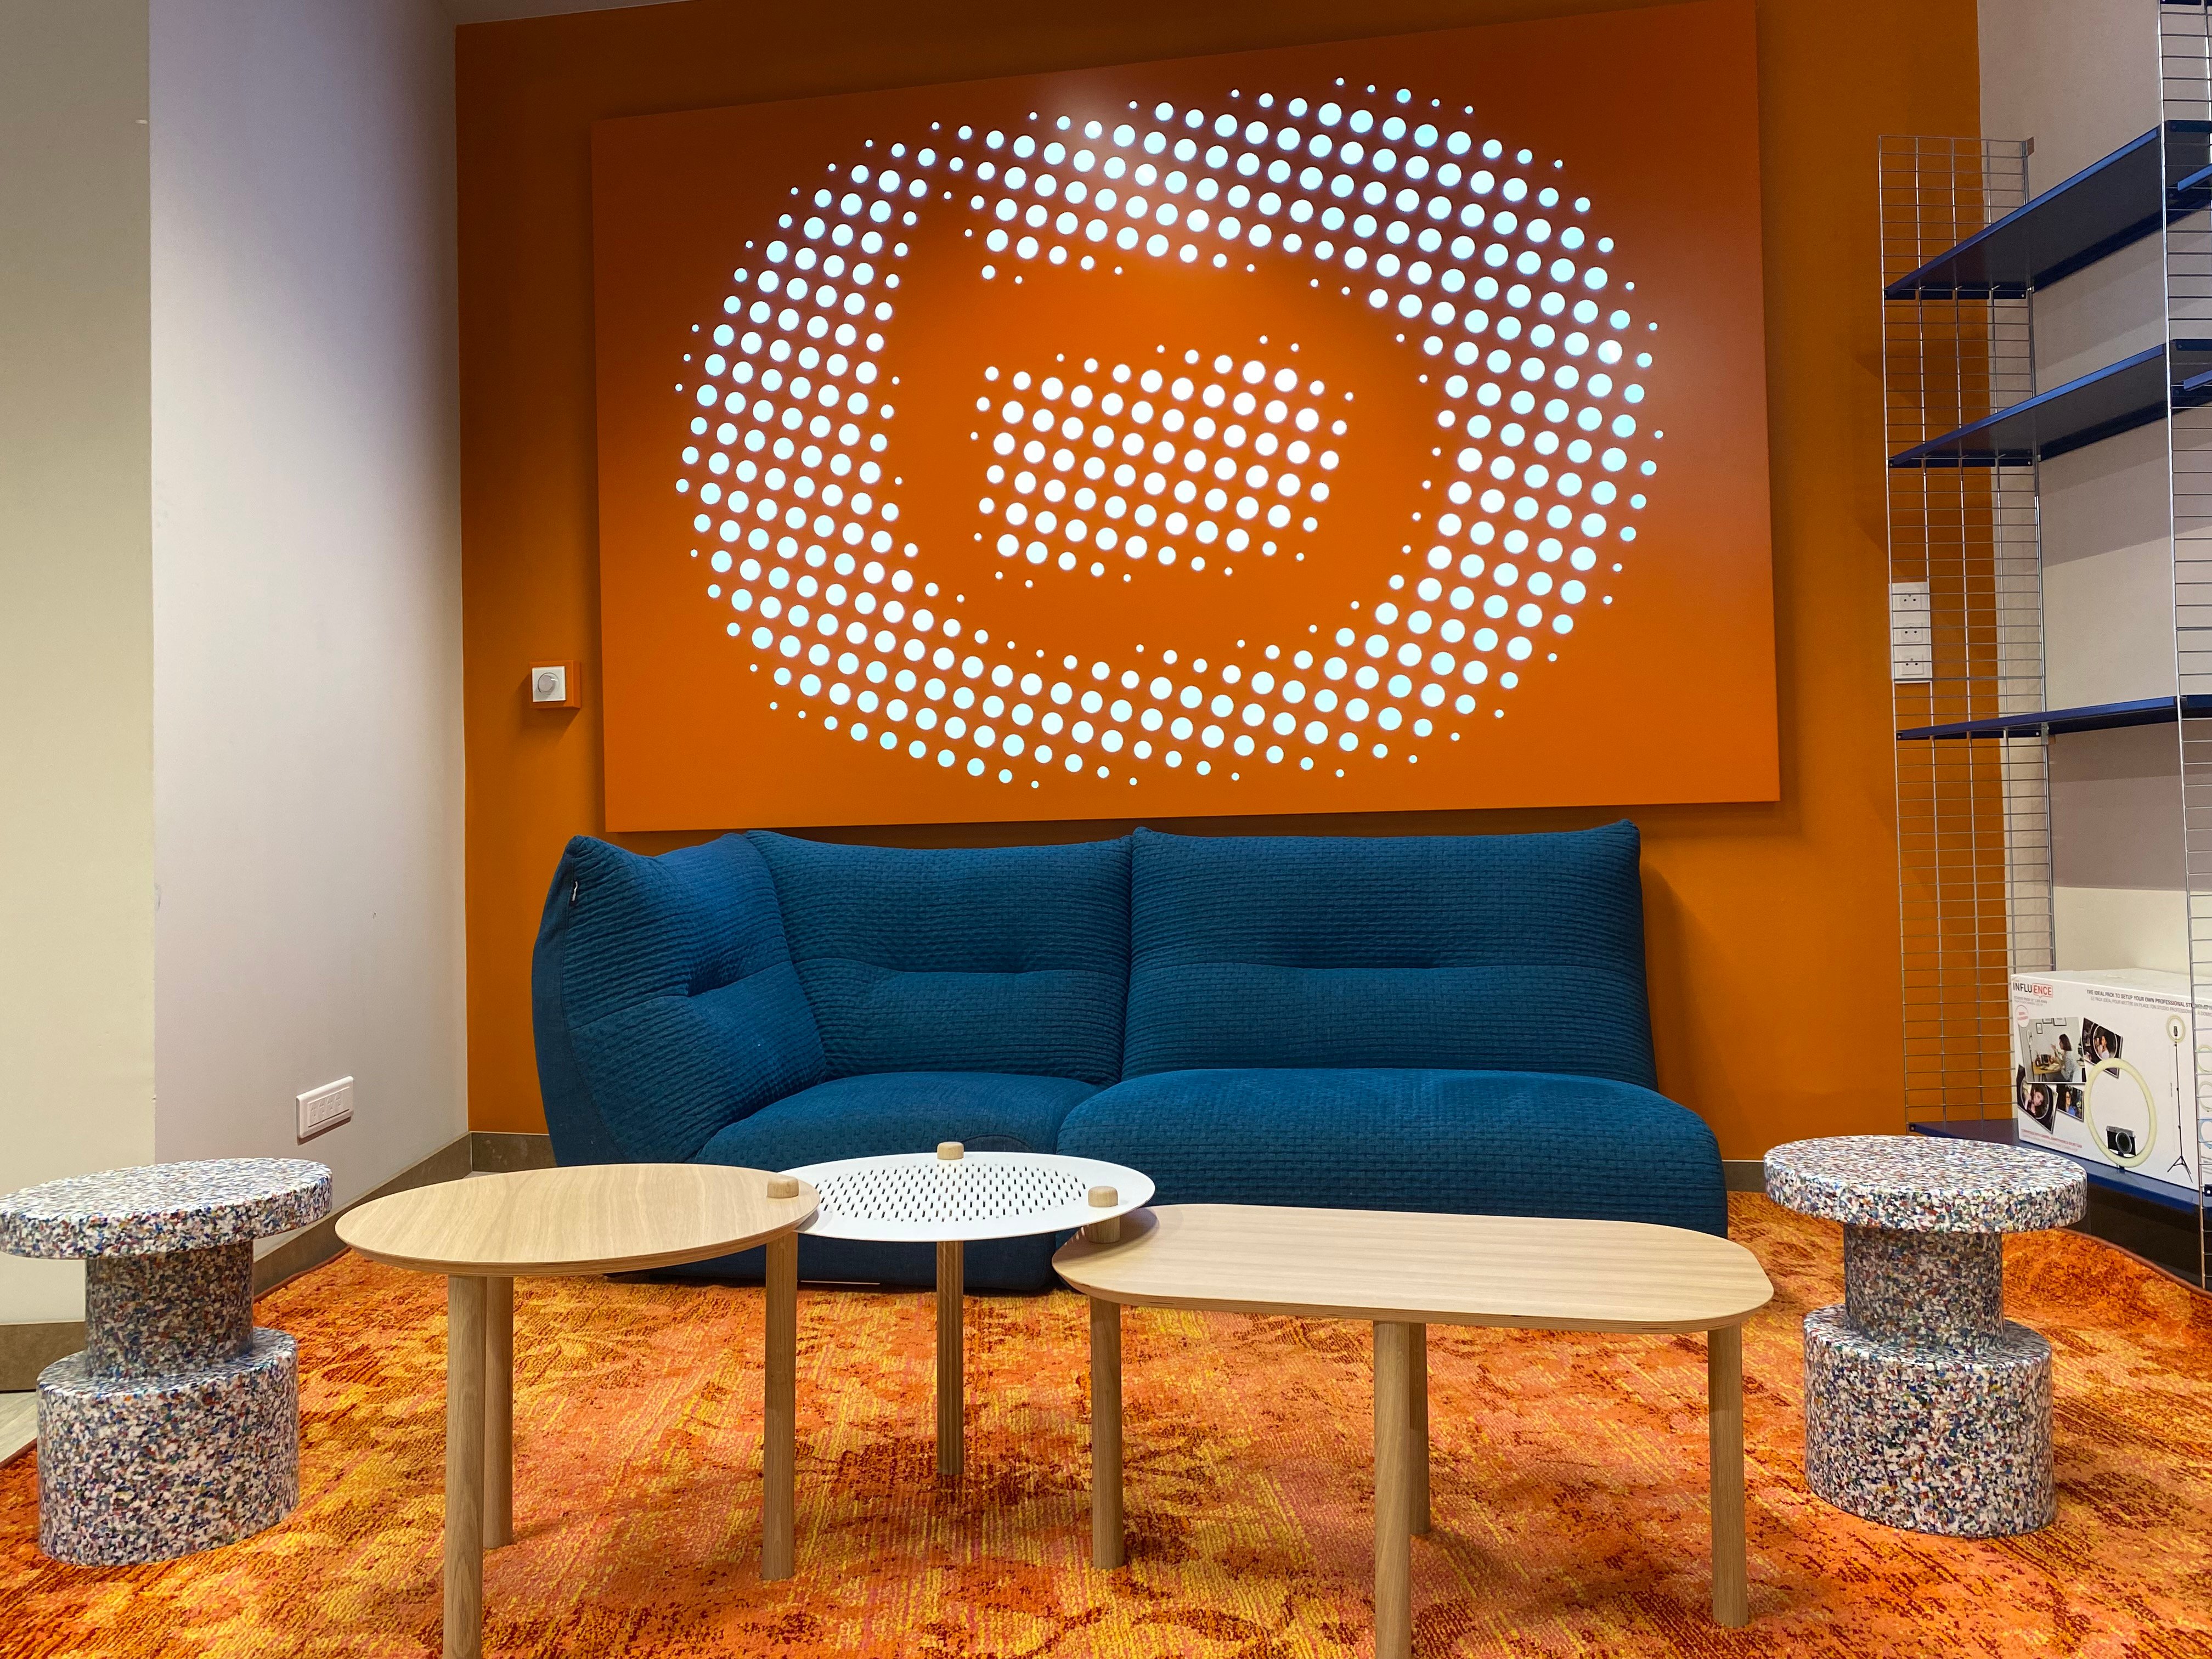 Canapé dédié à l'espace VLOGGING pour les influenceurs et clients chez Boulanger Lille
Esquermoise!